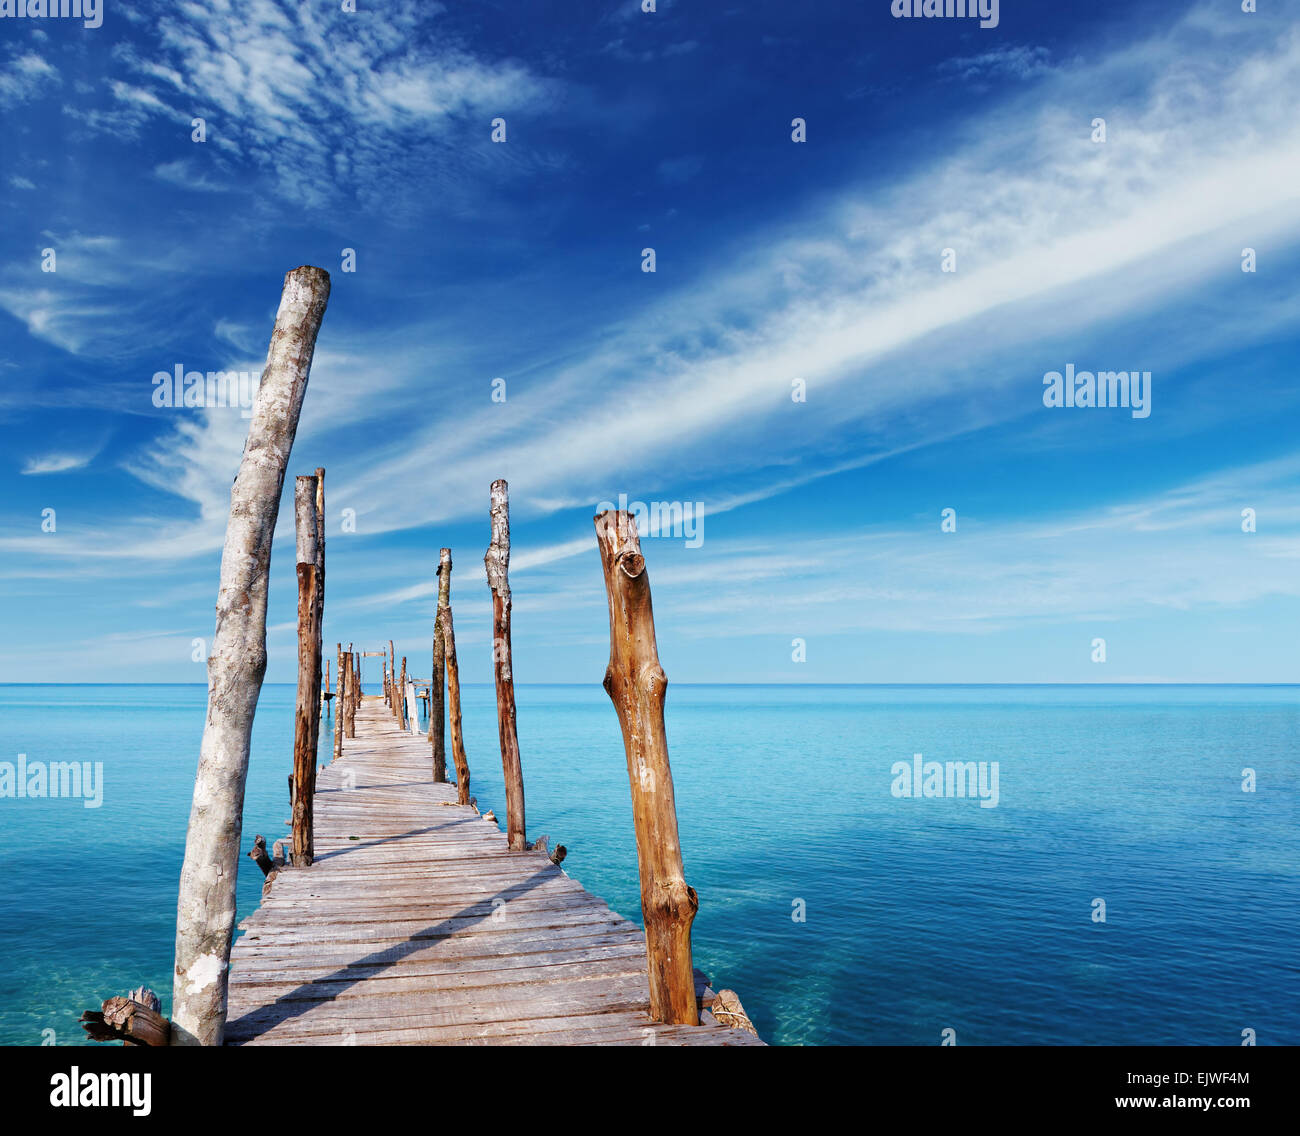 Jetée en bois sur une île tropicale, mer et ciel bleu, Thaïlande Banque D'Images